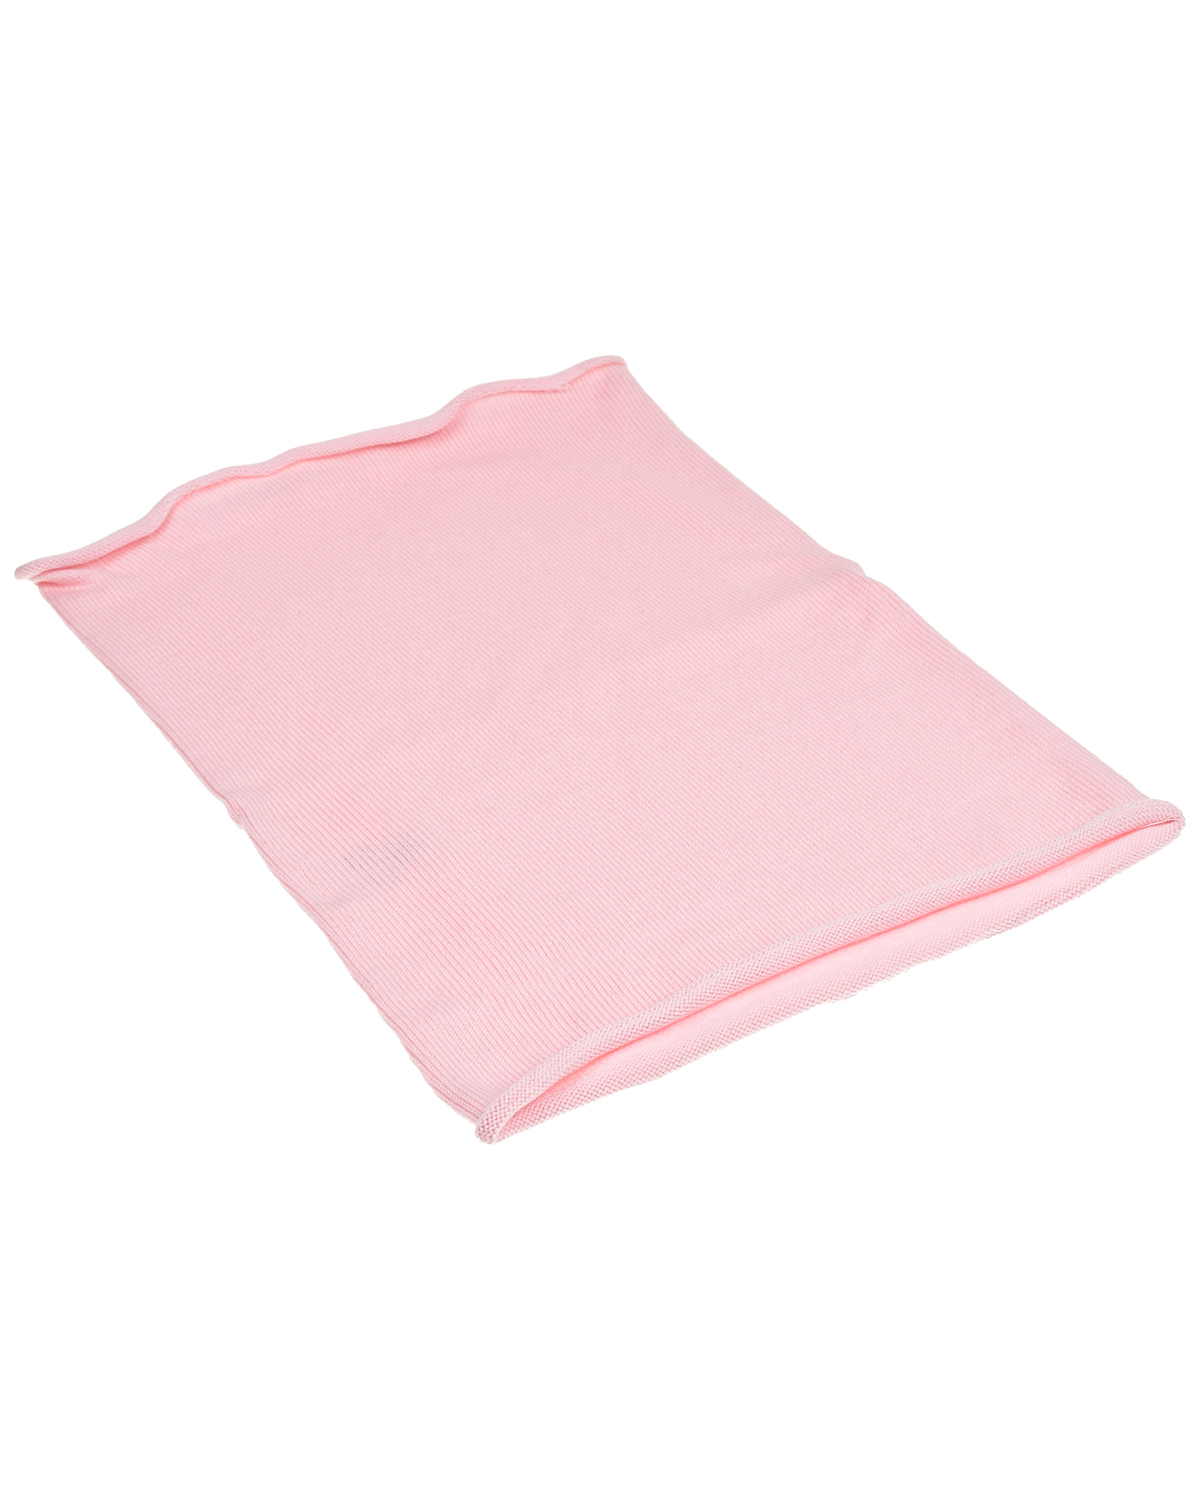 Розовый шарф-ворот, 30x41 см Norveg детский, размер unica - фото 1